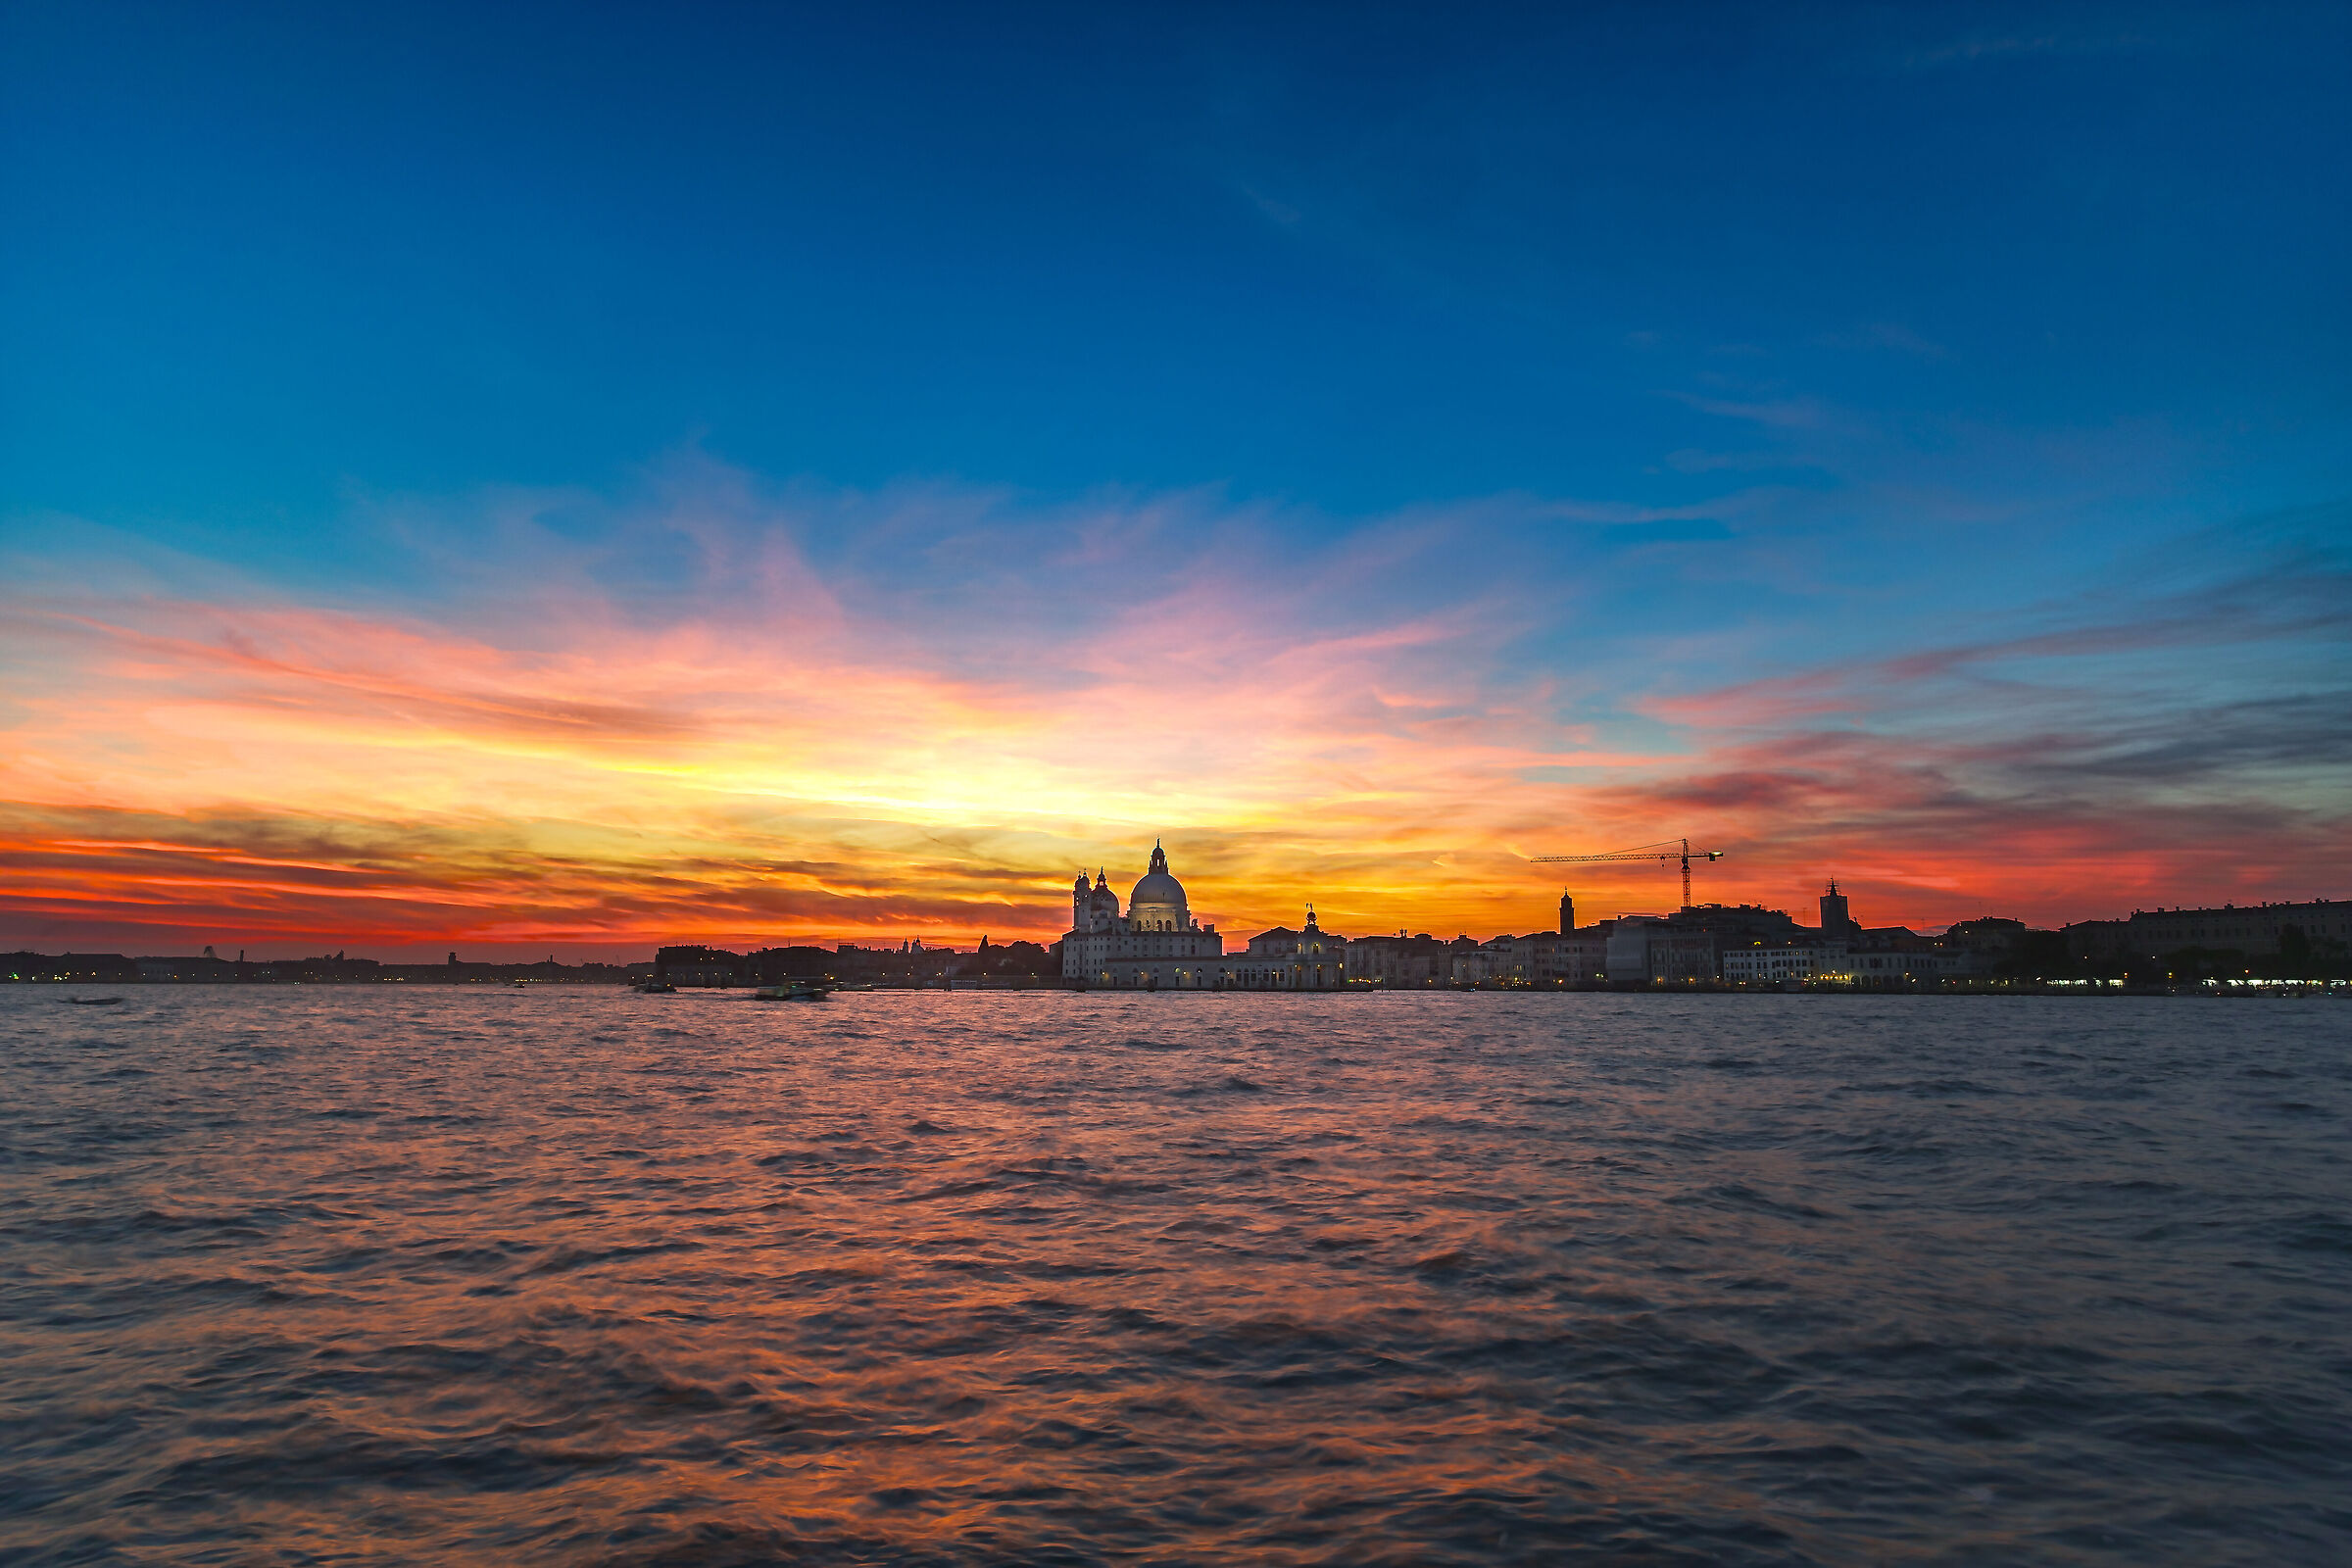 Venezia al tramonto...